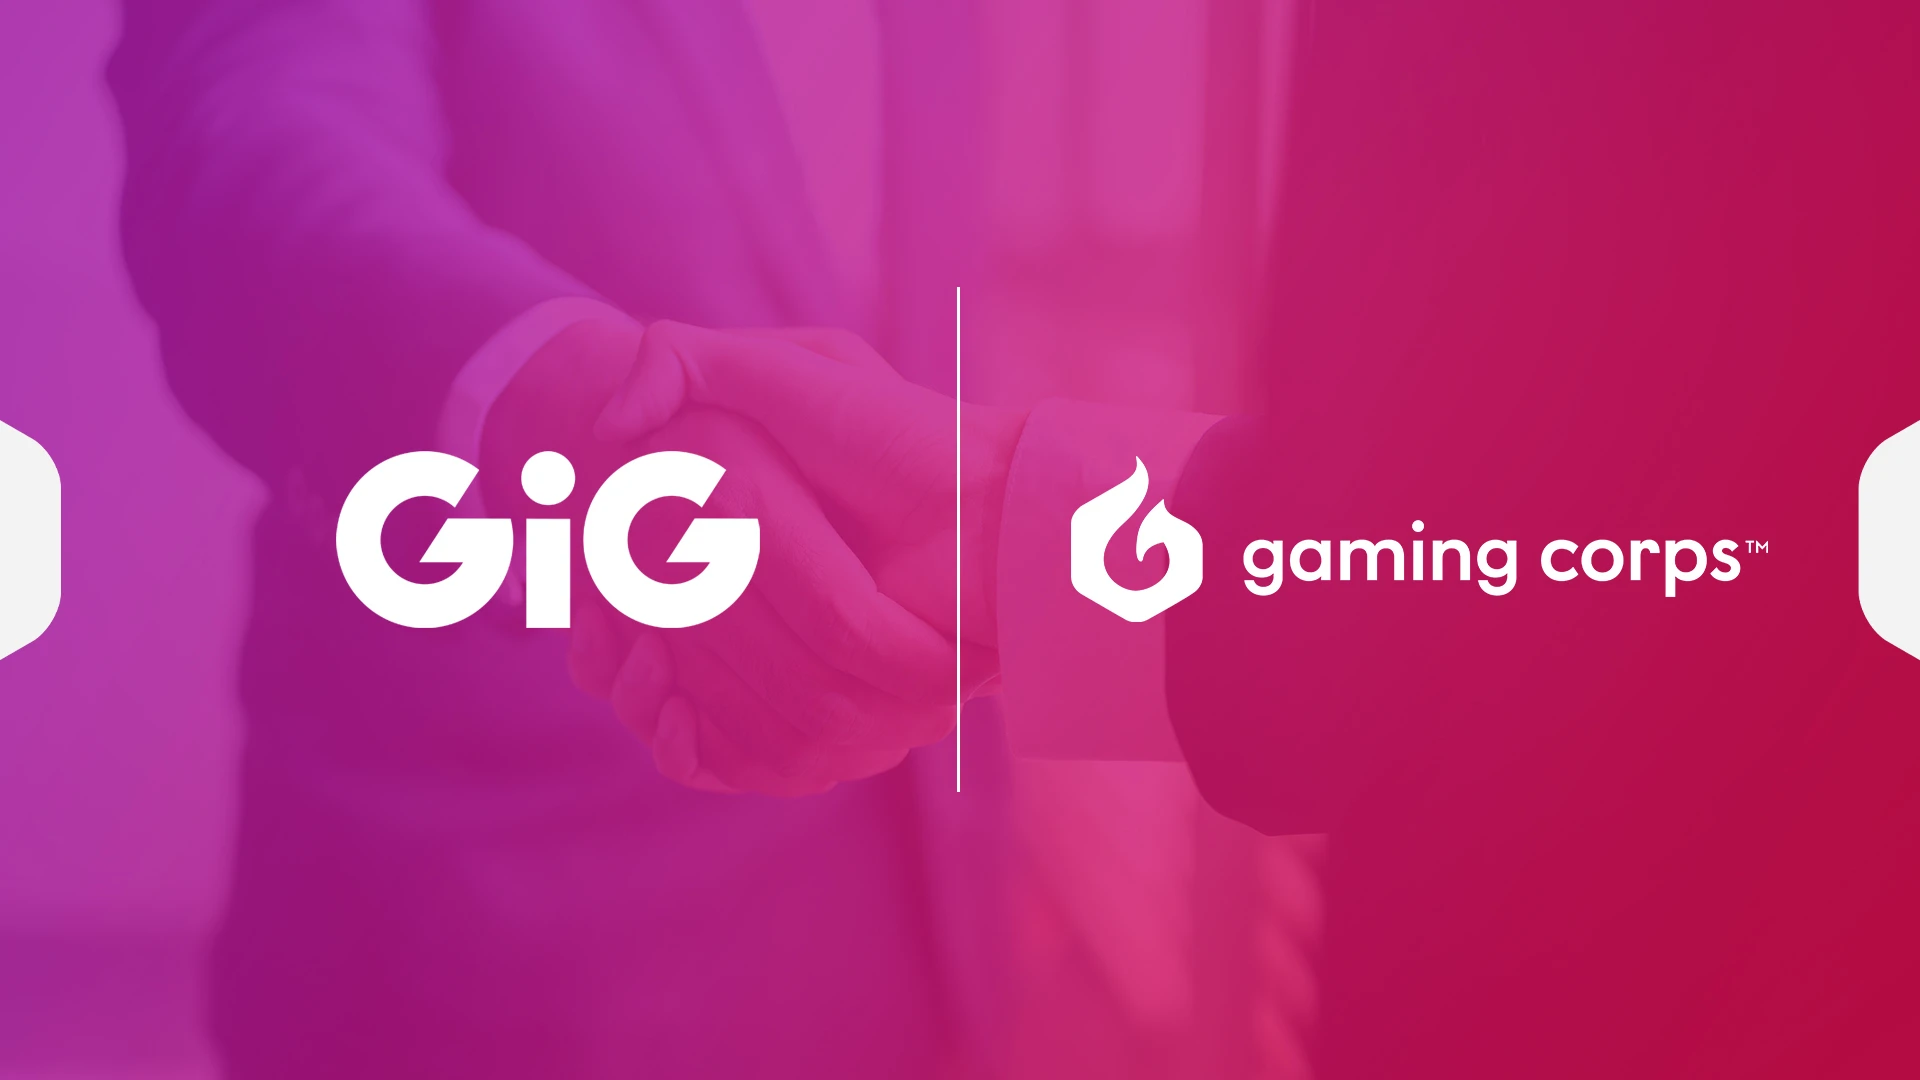 GC_GiG_partnership_header image